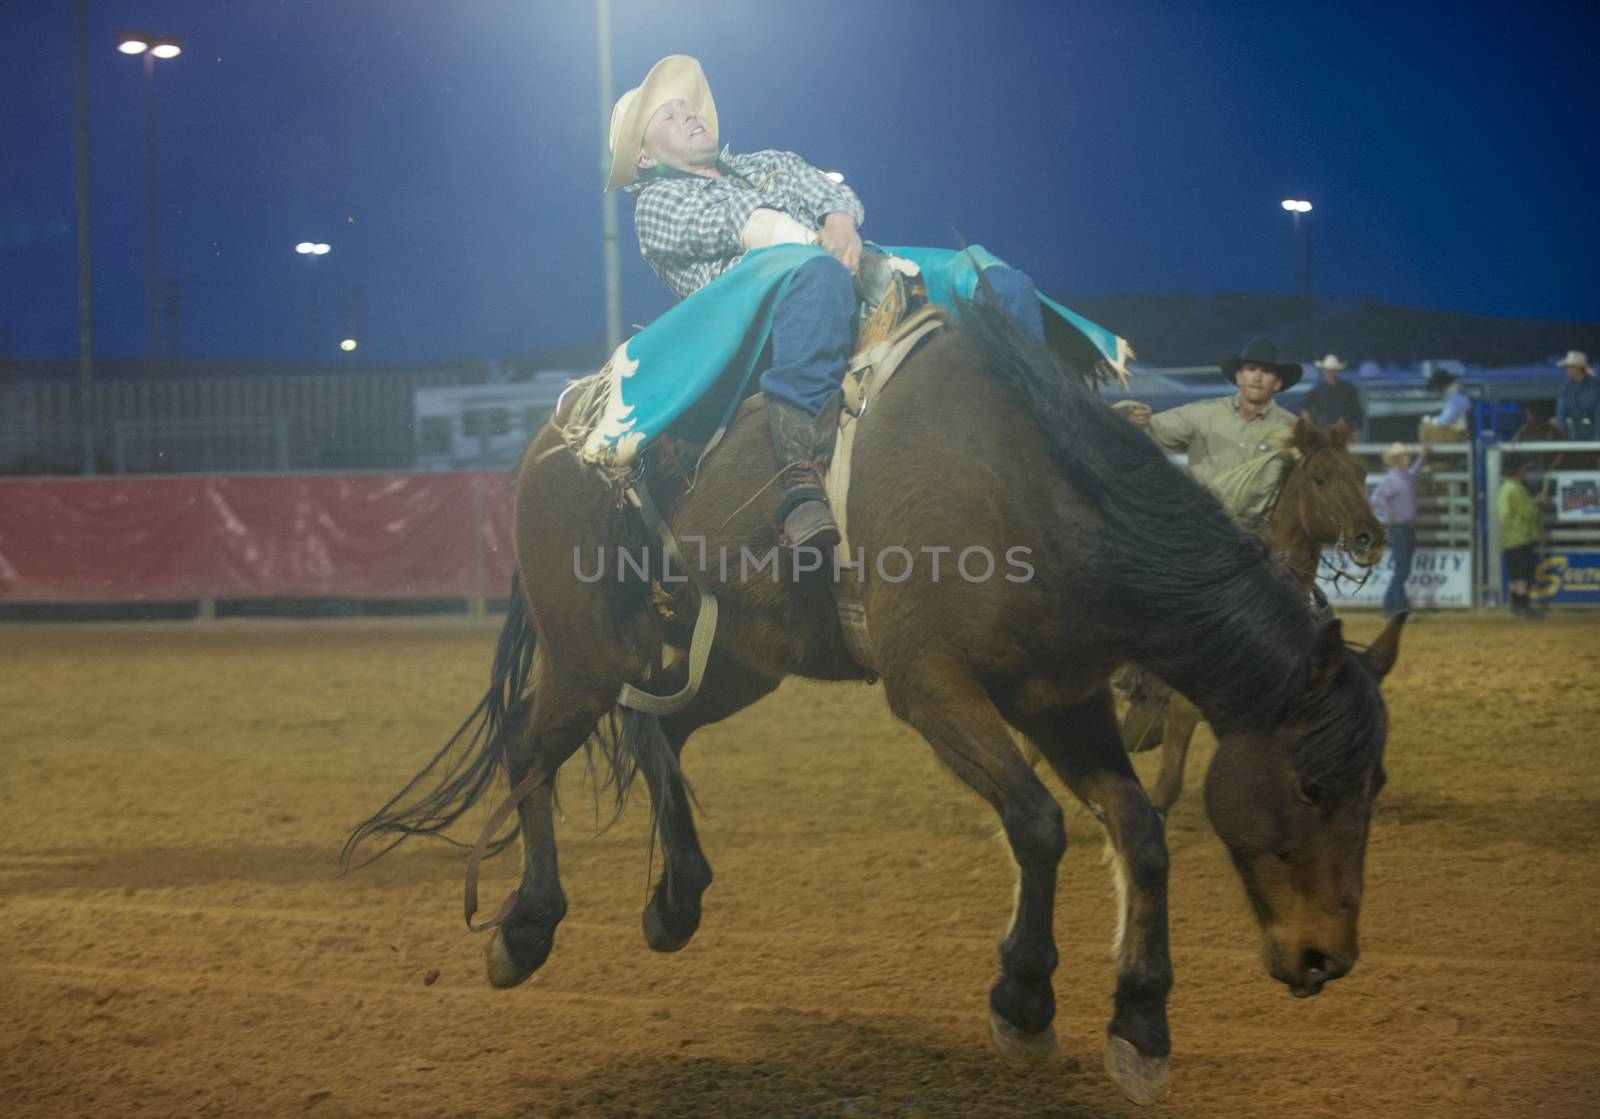 The Clark County Fair and Rodeo by kobby_dagan